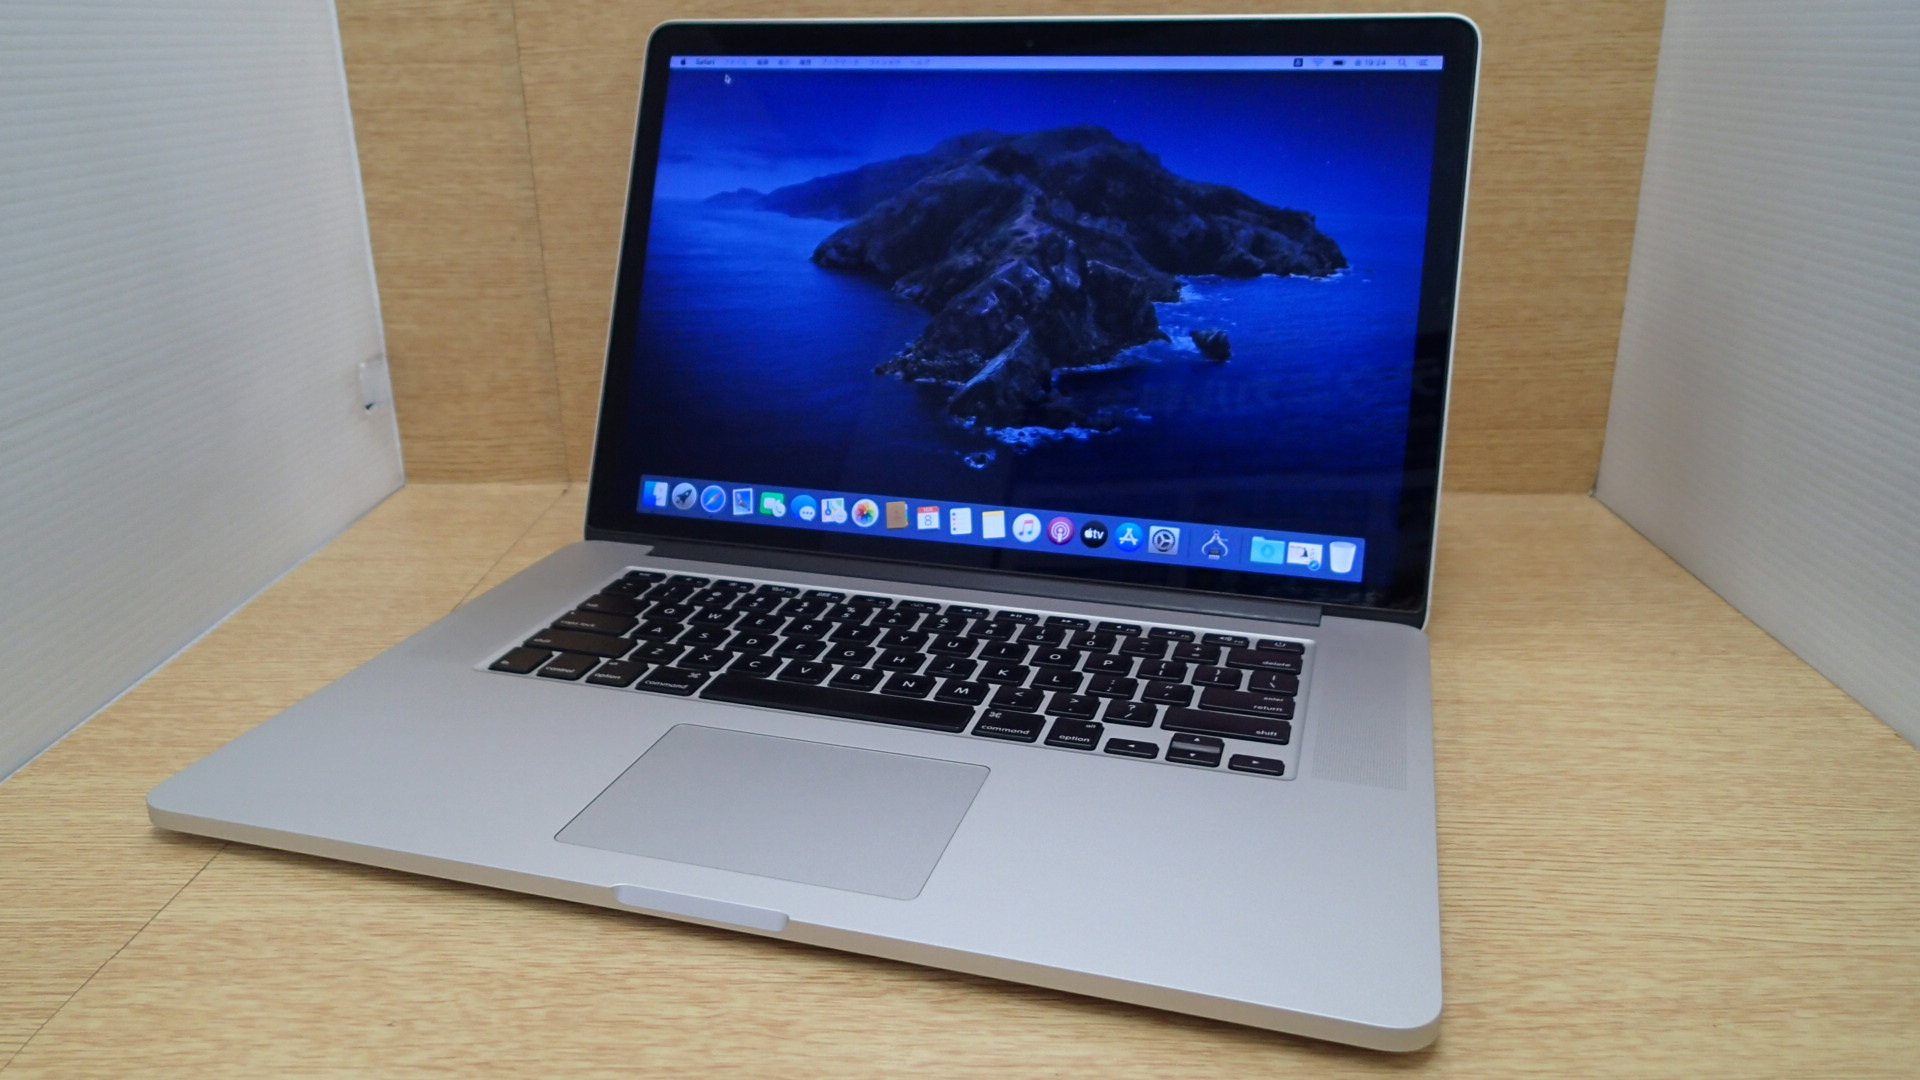 MacBook Pro (Retina Mid 2012) A1398 CPU:Corei7 @2.70GHz / メモリ 